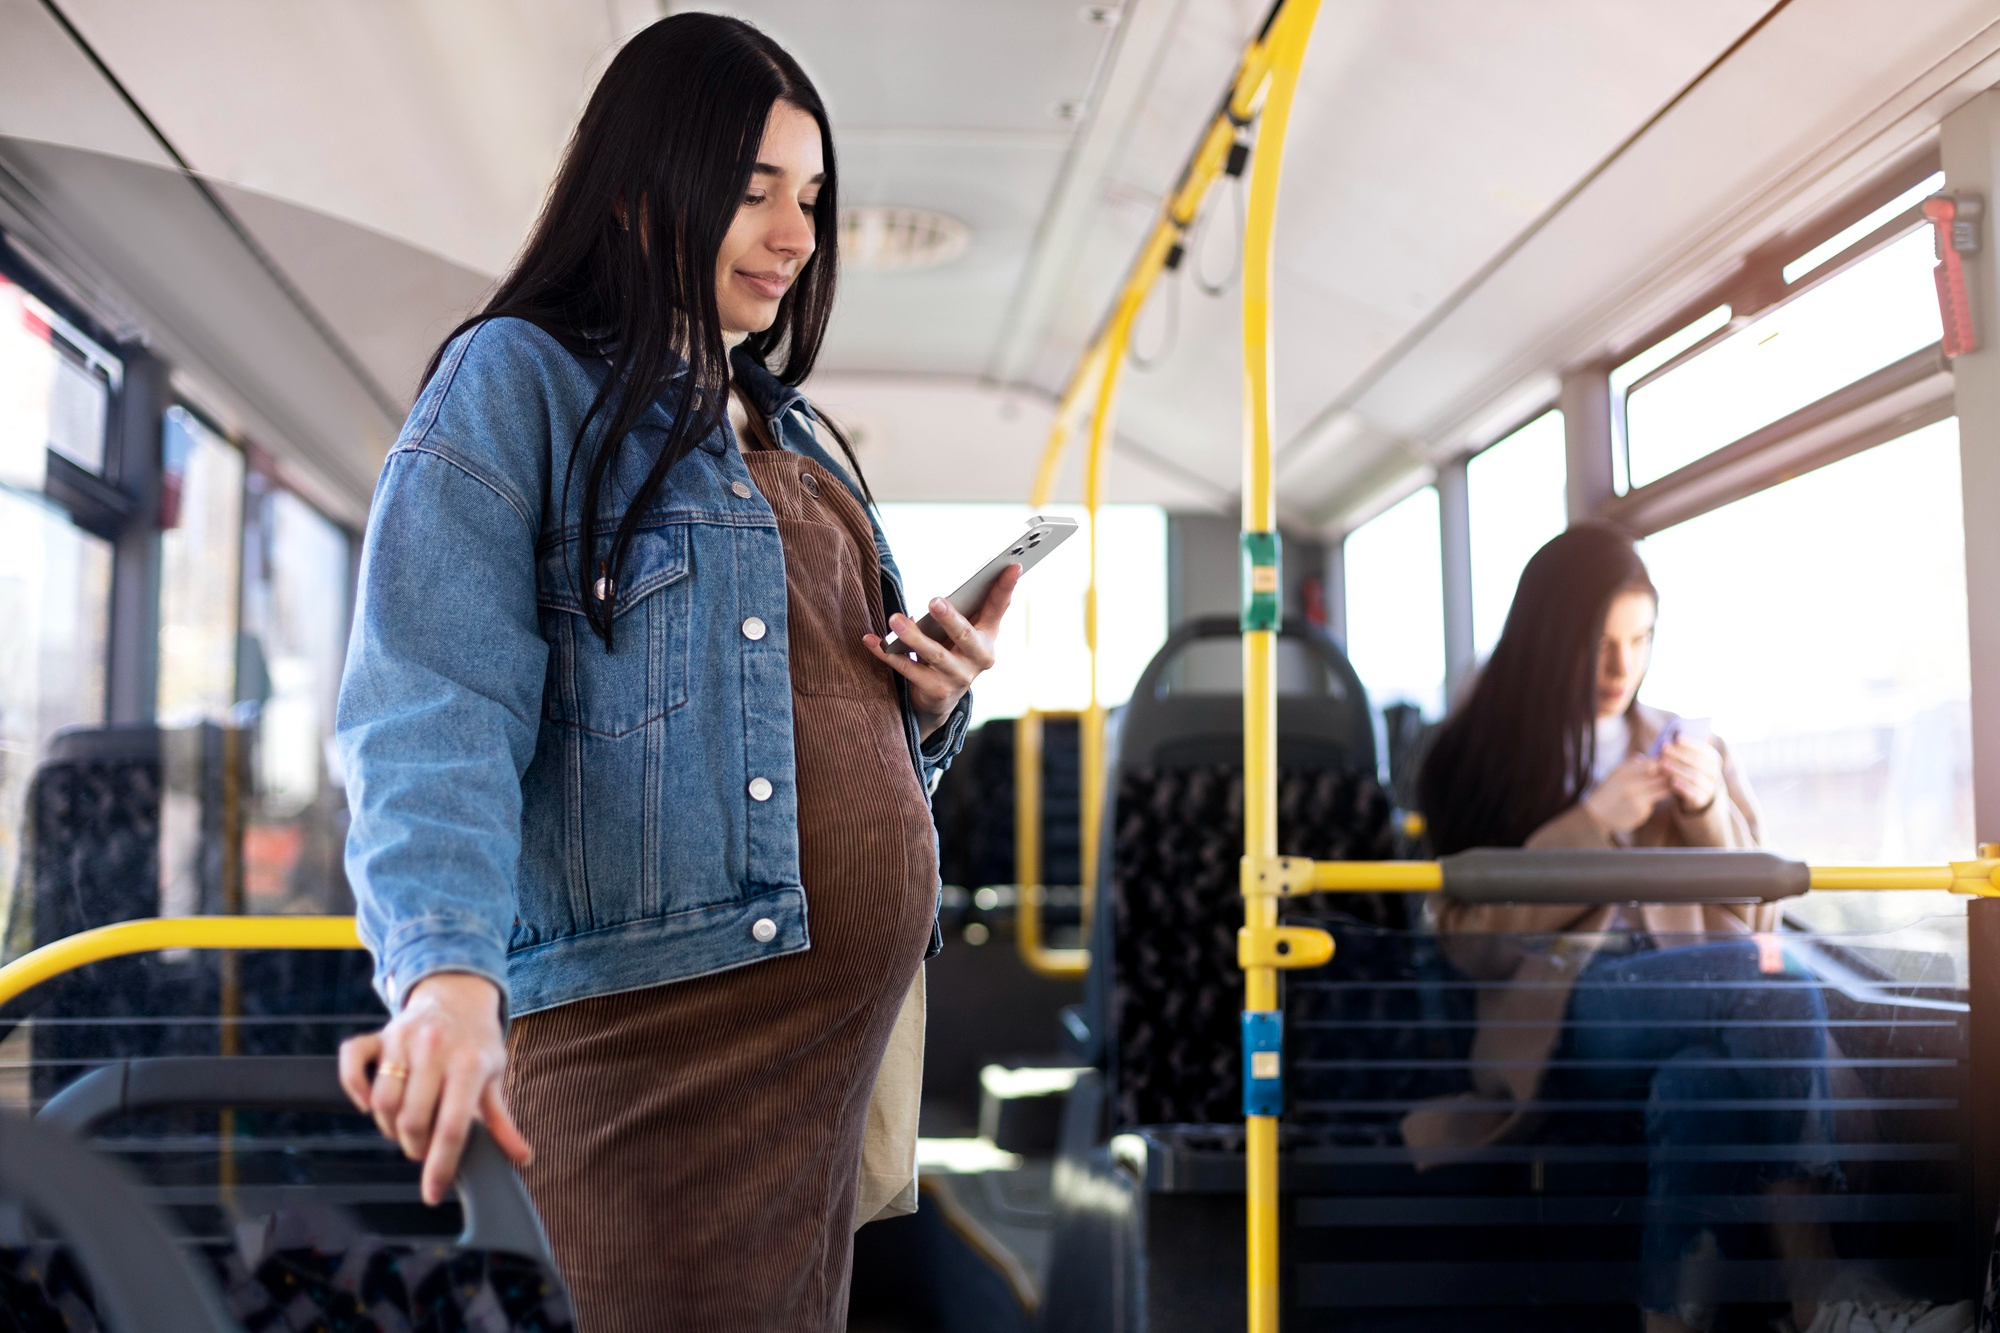 Une femme enceinte voyageant en bus | Source : Freepik